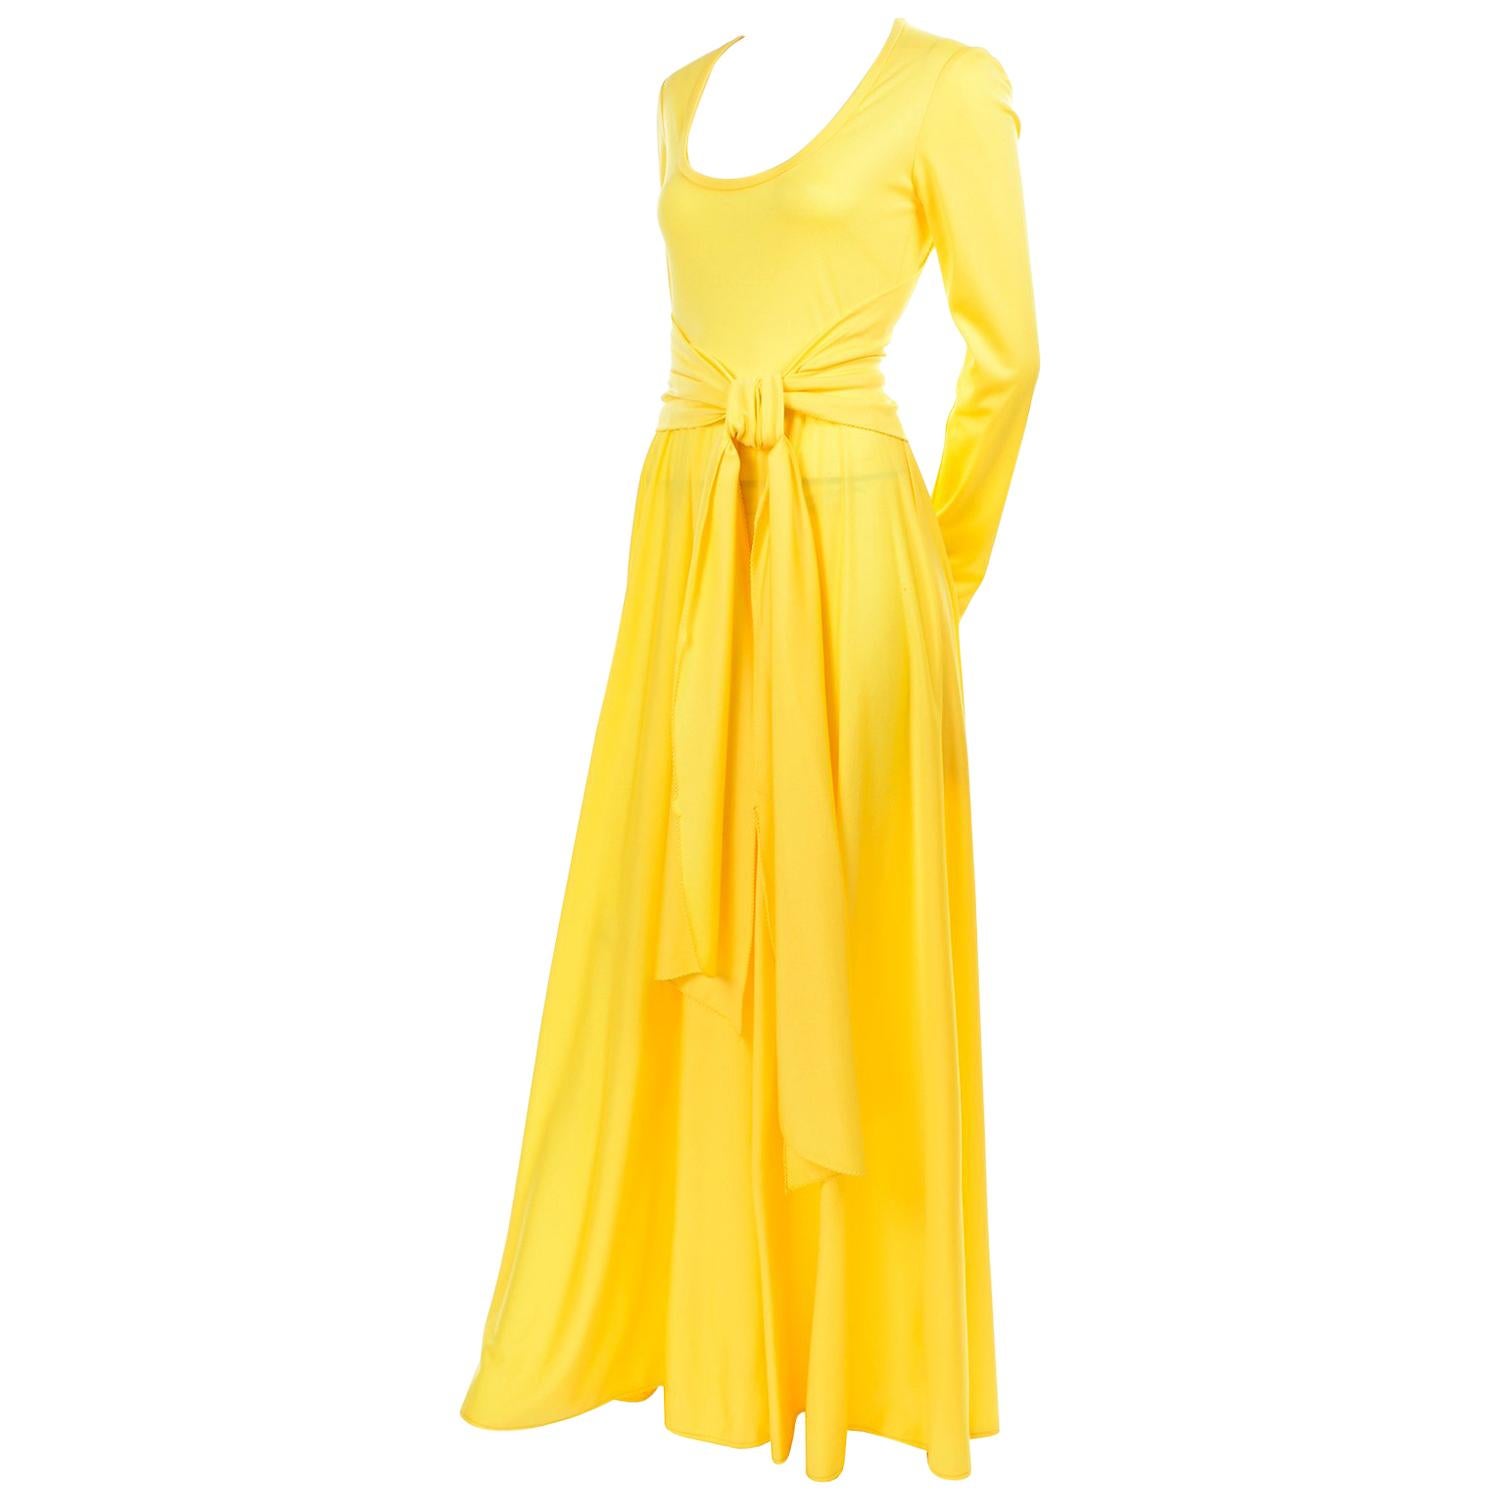 Lillie Rubin Kollektion 700 Vintage Kleid aus gelbem Jersey mit Schärpe